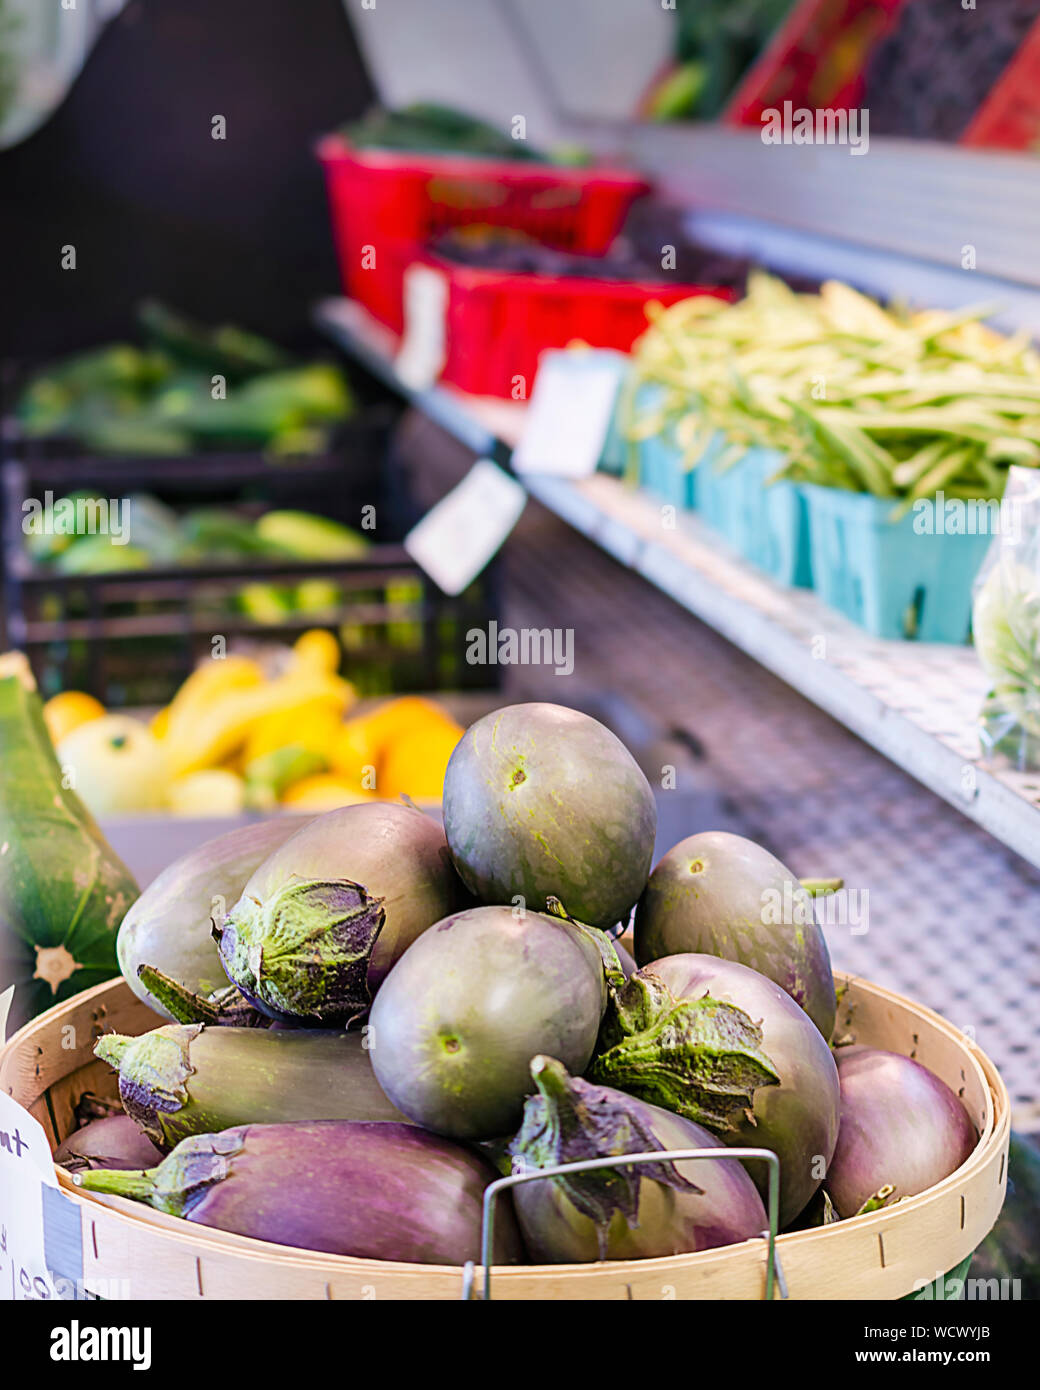 Scheffel ei Pflanze an einem strassenrand stehen Verkauf von frischen Produkten. Zusätzliche Gemüse im Hintergrund, einschließlich Bohnen, gelbe Zucchini und Gurken Stockfoto